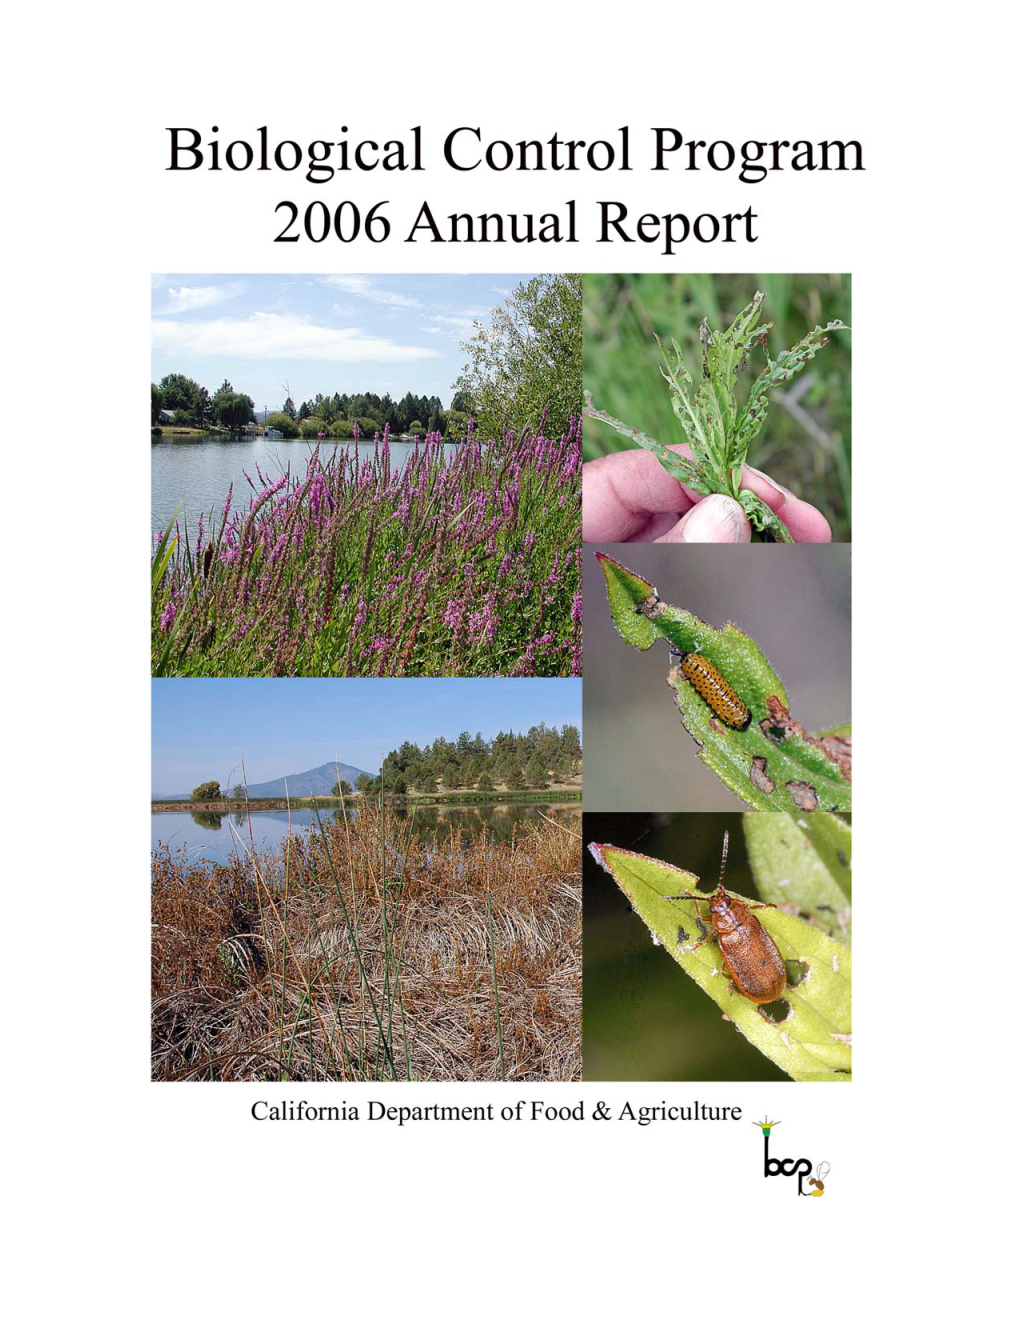 Biological Control Program 2006 Summary